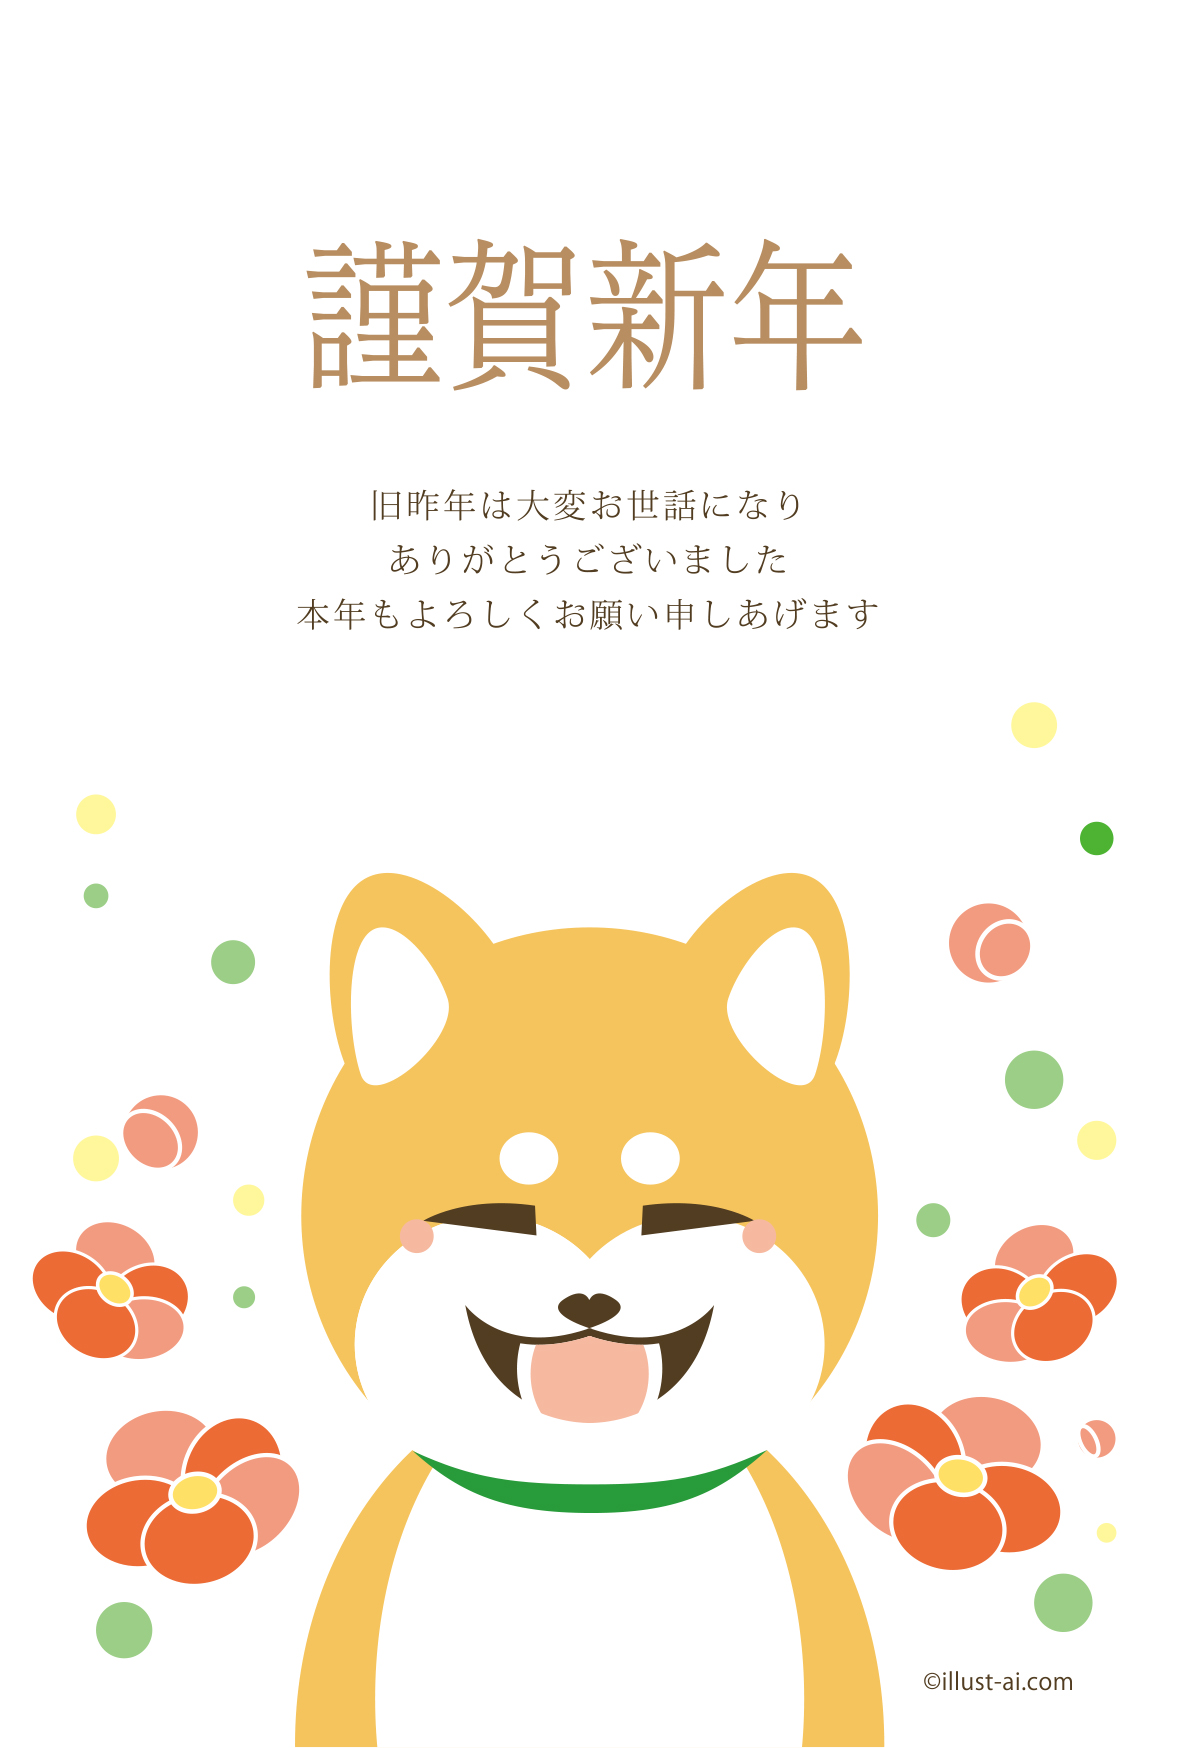 年賀状 戌年 梅の花と柴犬の癒やし笑顔 年賀状18無料イラスト素材集